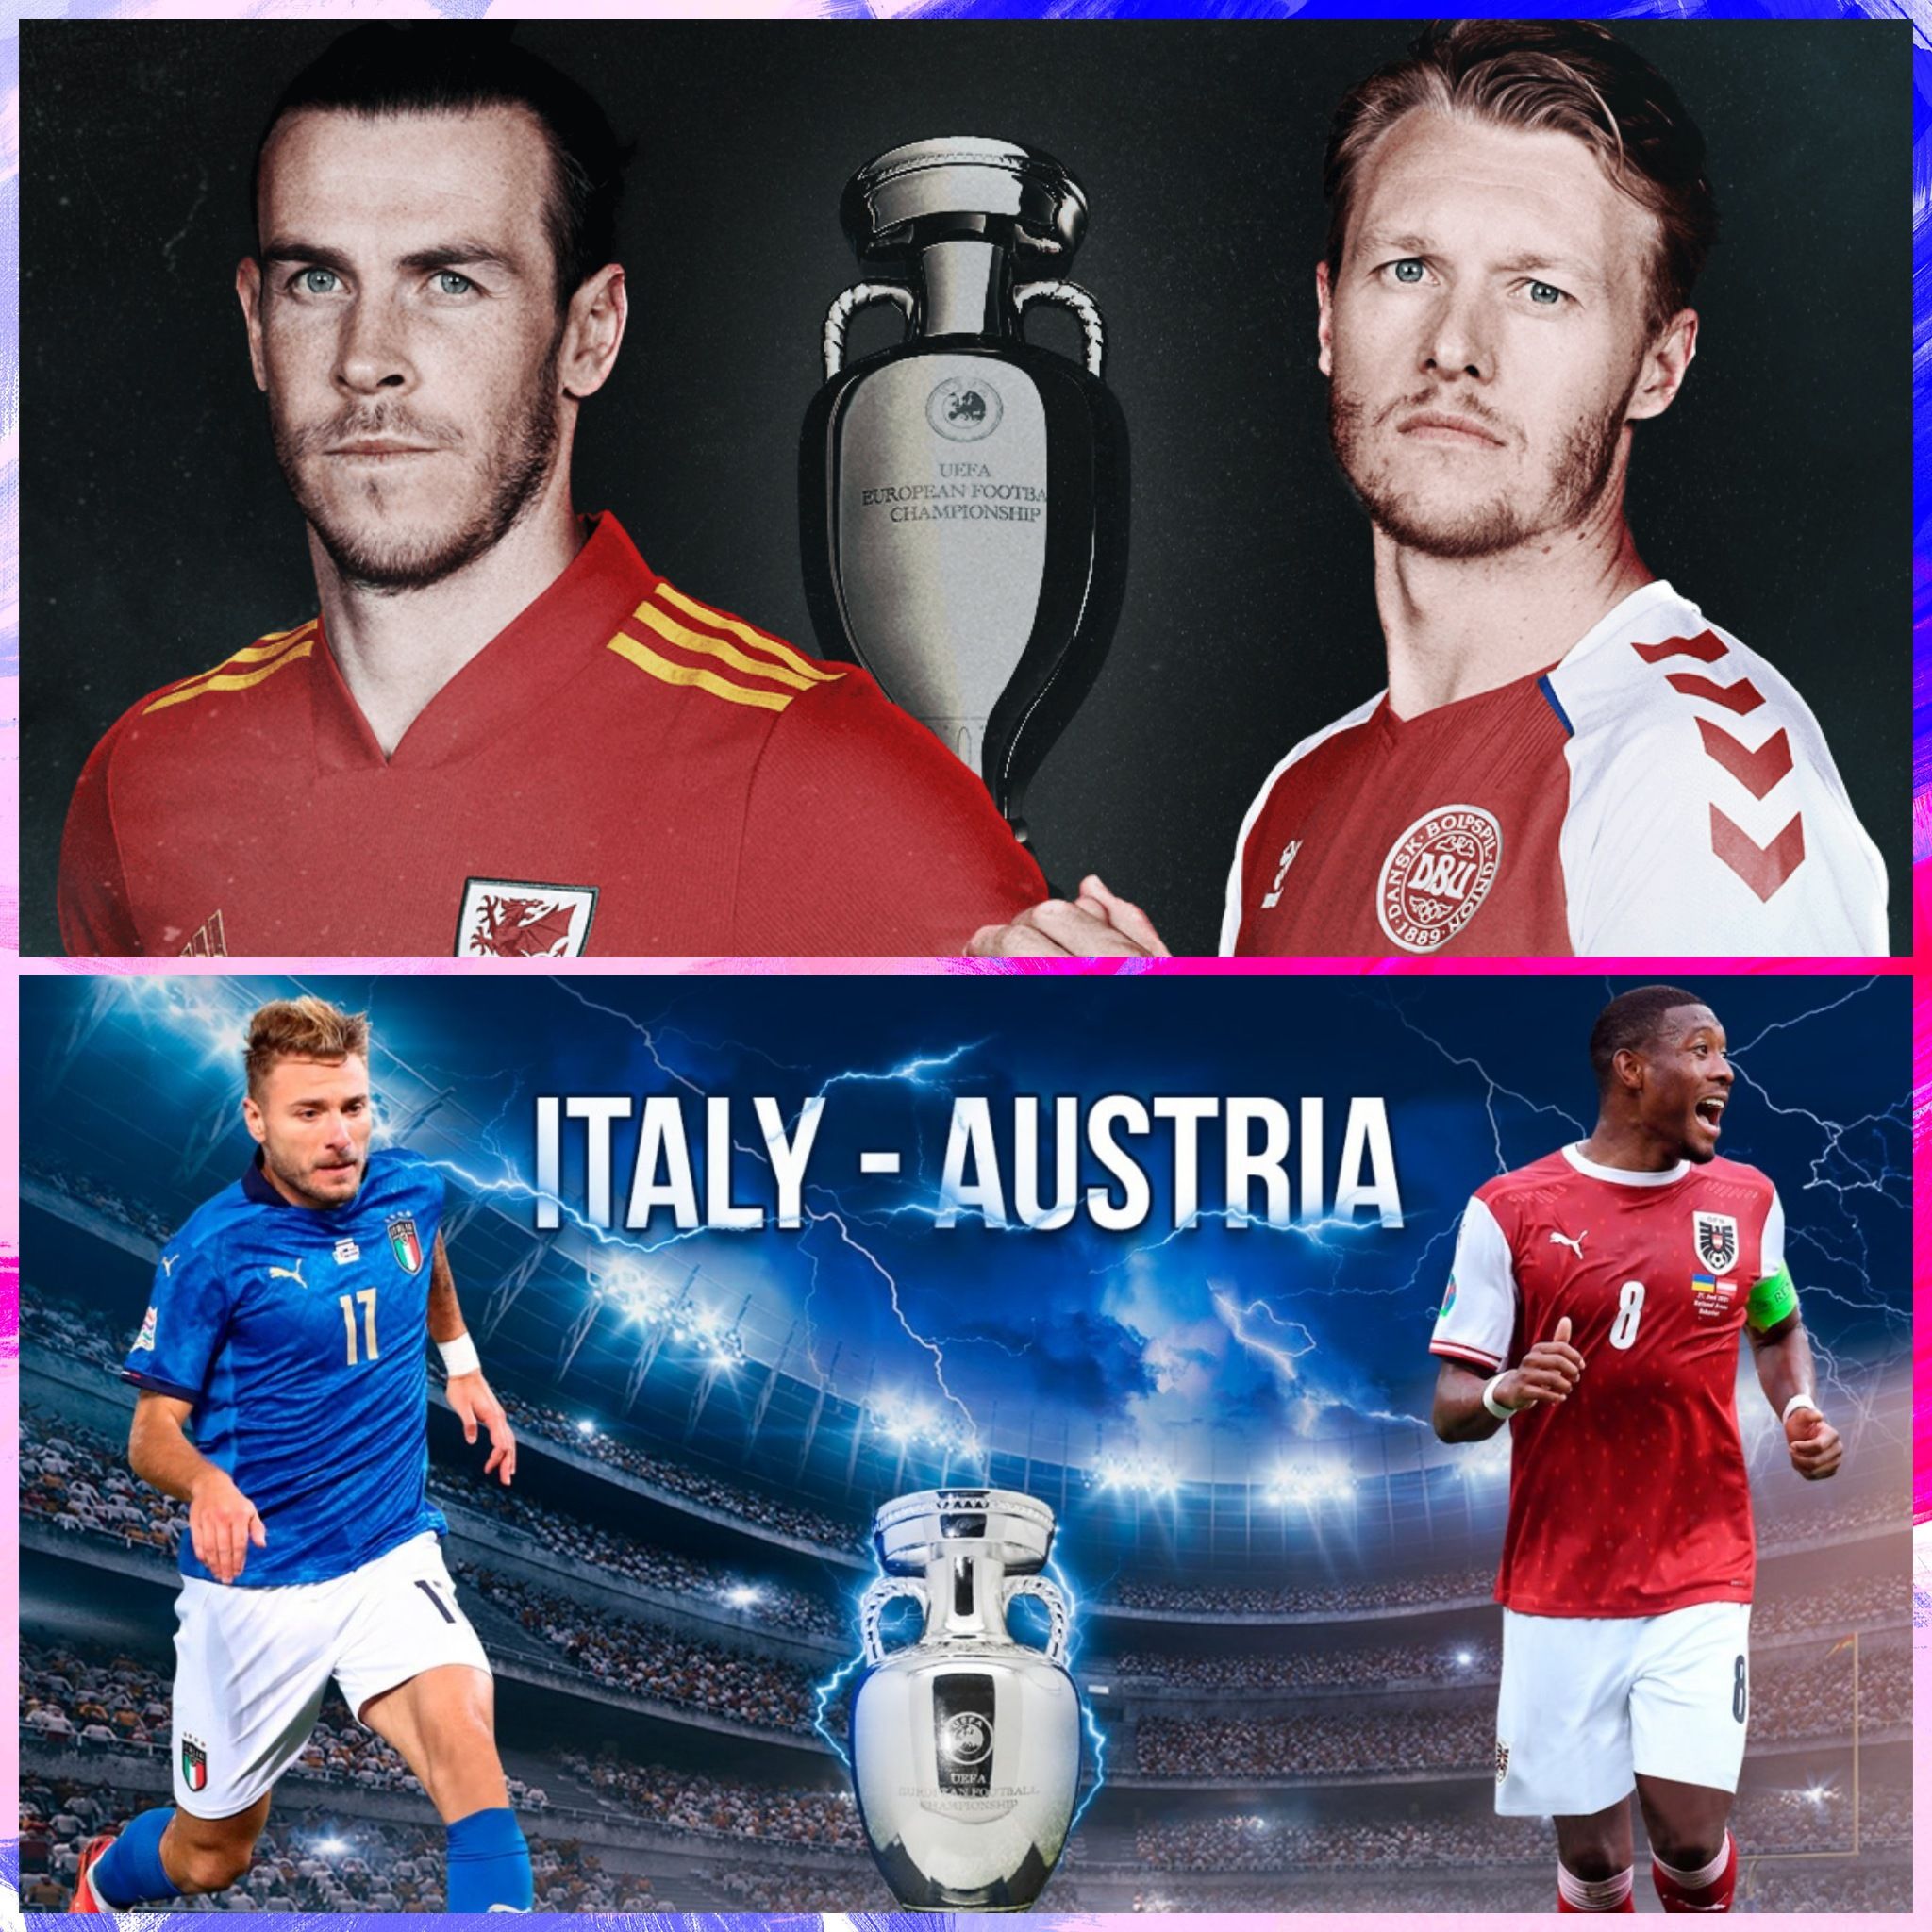 Italy vs austria score prediction